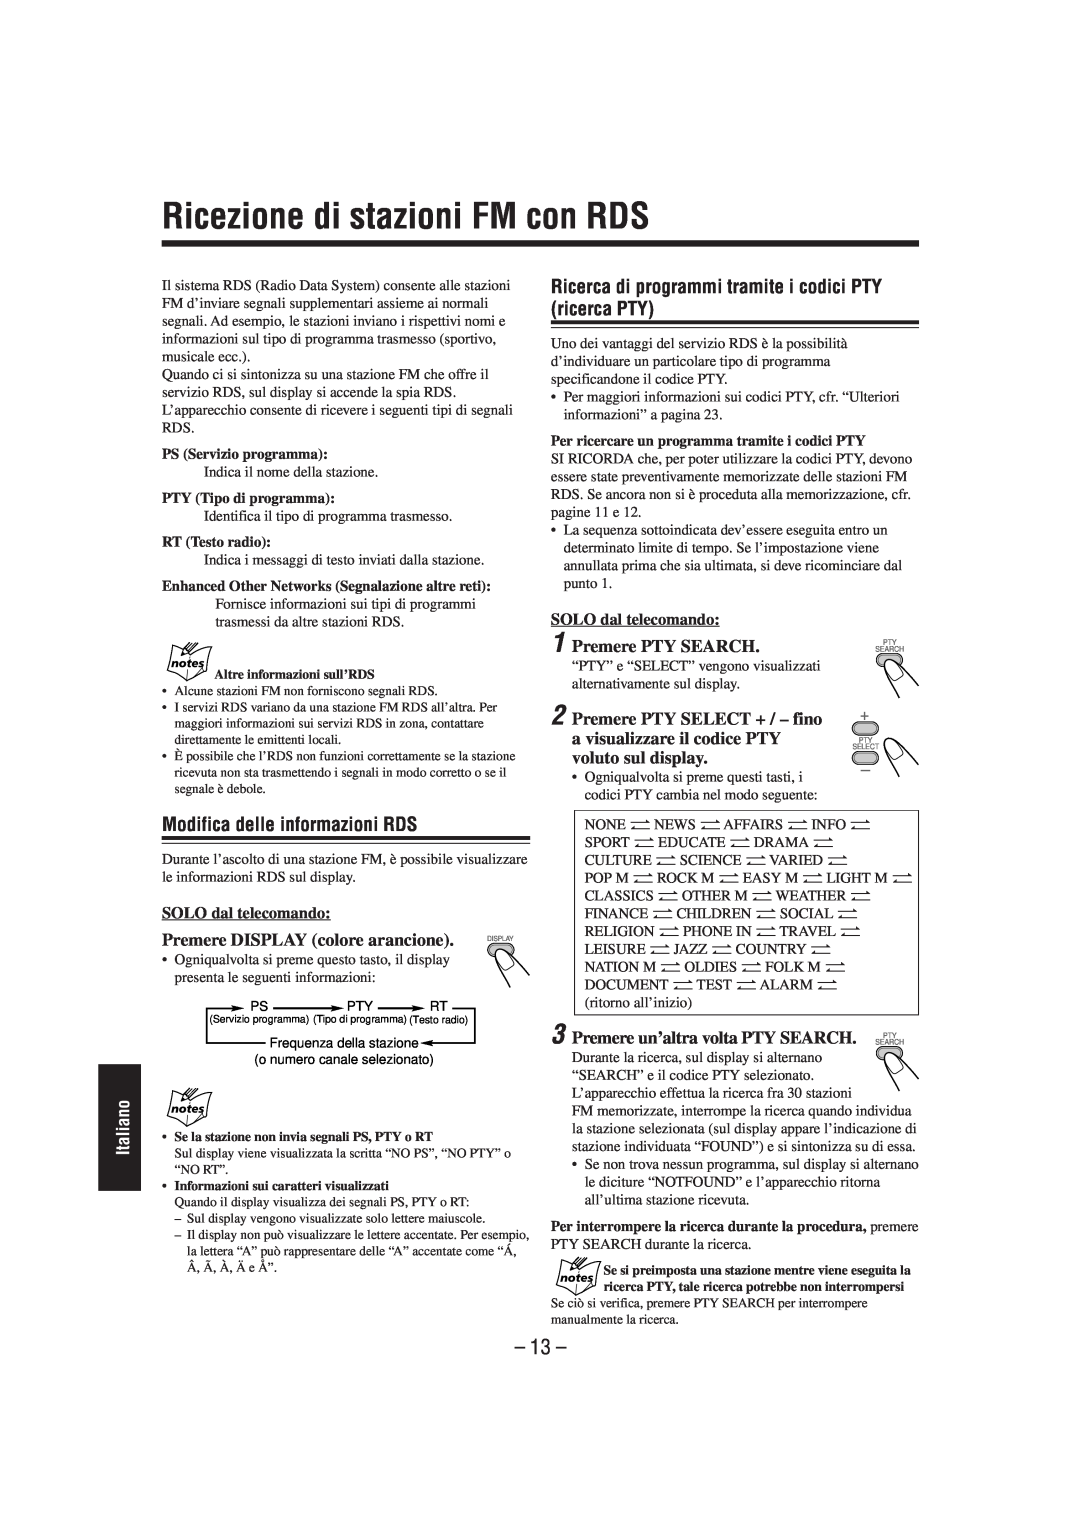 JVC UX-L40R manual Ricezione di stazioni FM con RDS, Modifica delle informazioni RDS, Premere DISPLAY colore arancione, 13 